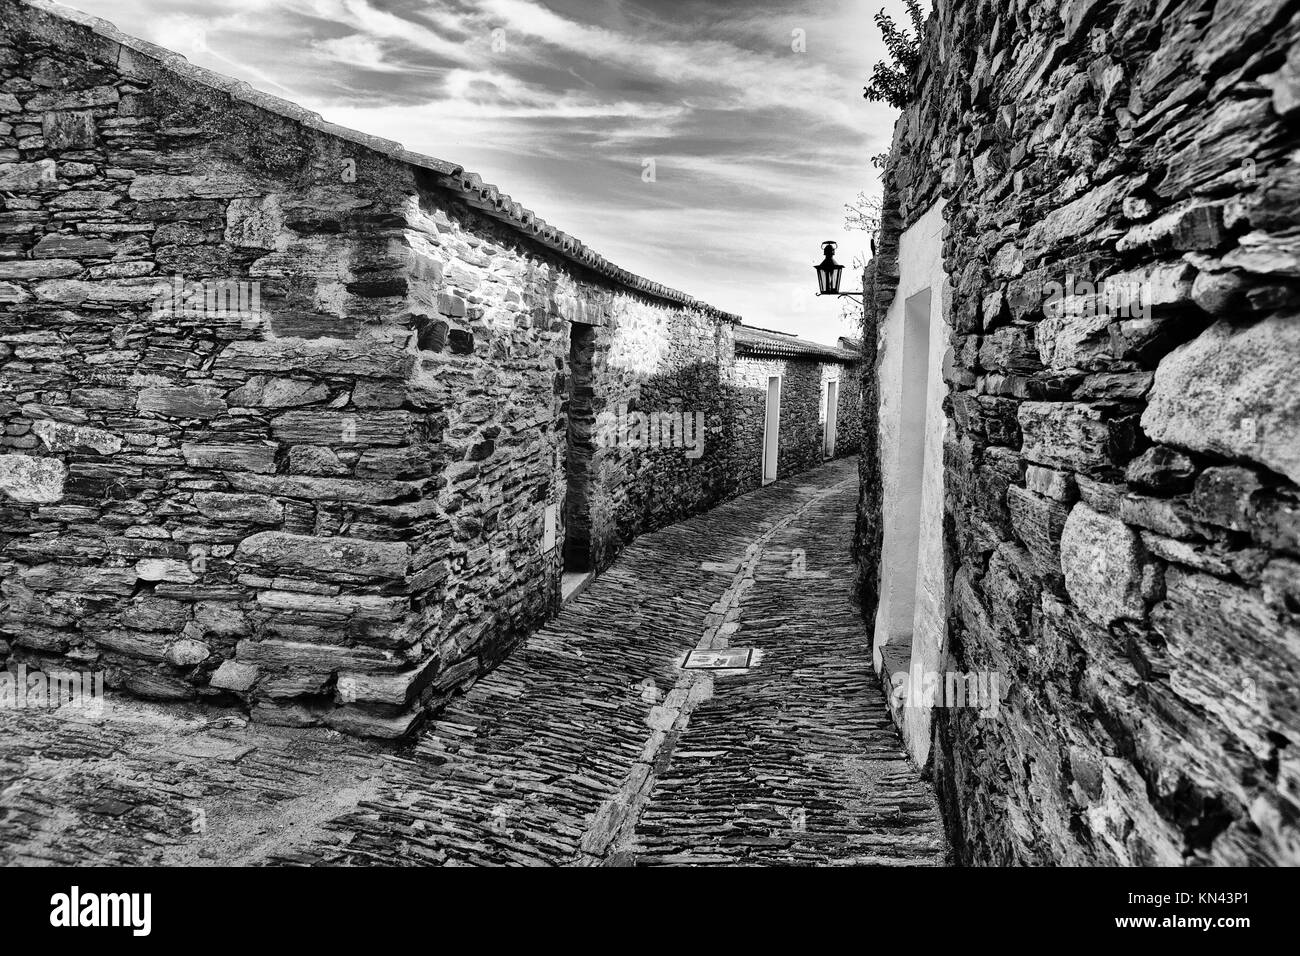 Magnifico villaggio di Monsaraz; tradizionale street con piccole case bianche e tegole rosse una vista tipica del sud del paese. Foto Stock